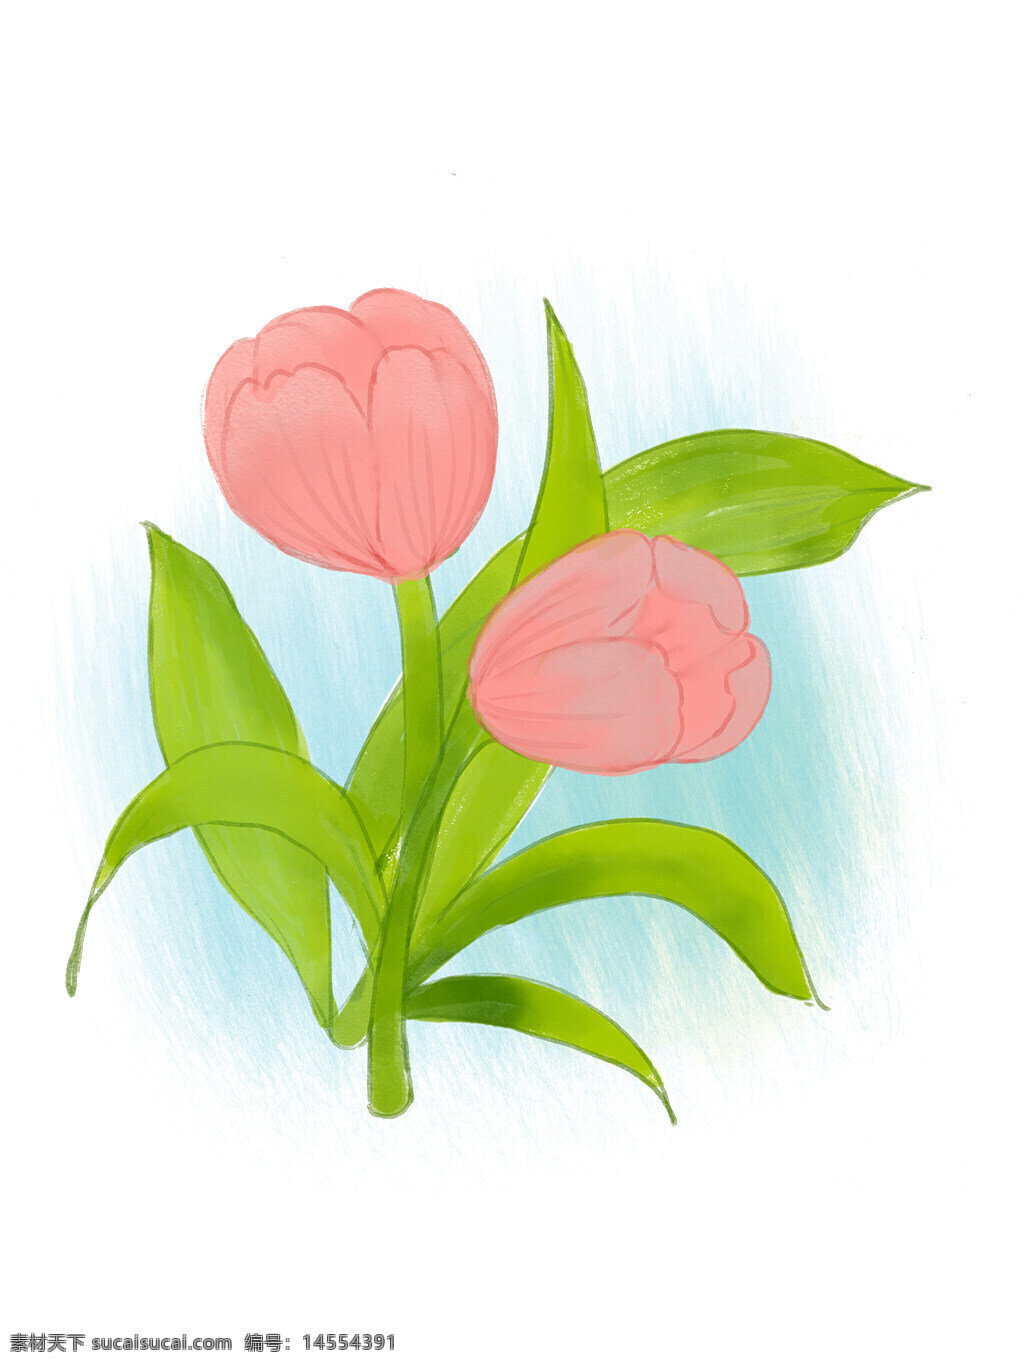 郁金香 粉色 装饰小花 花卉 植物